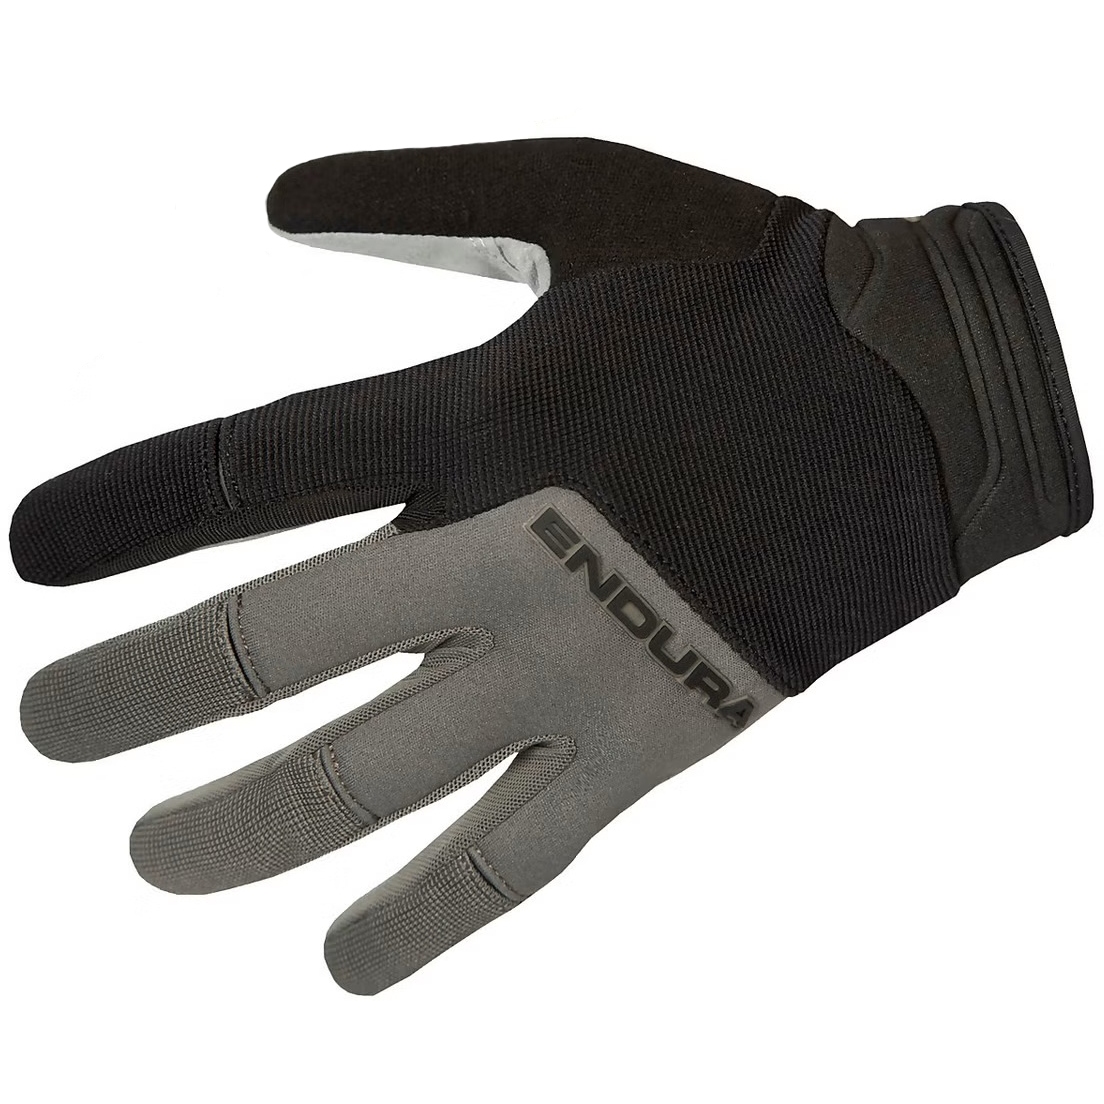 Produktbild von Endura Hummvee Plus II Vollfinger-Handschuhe - schwarz